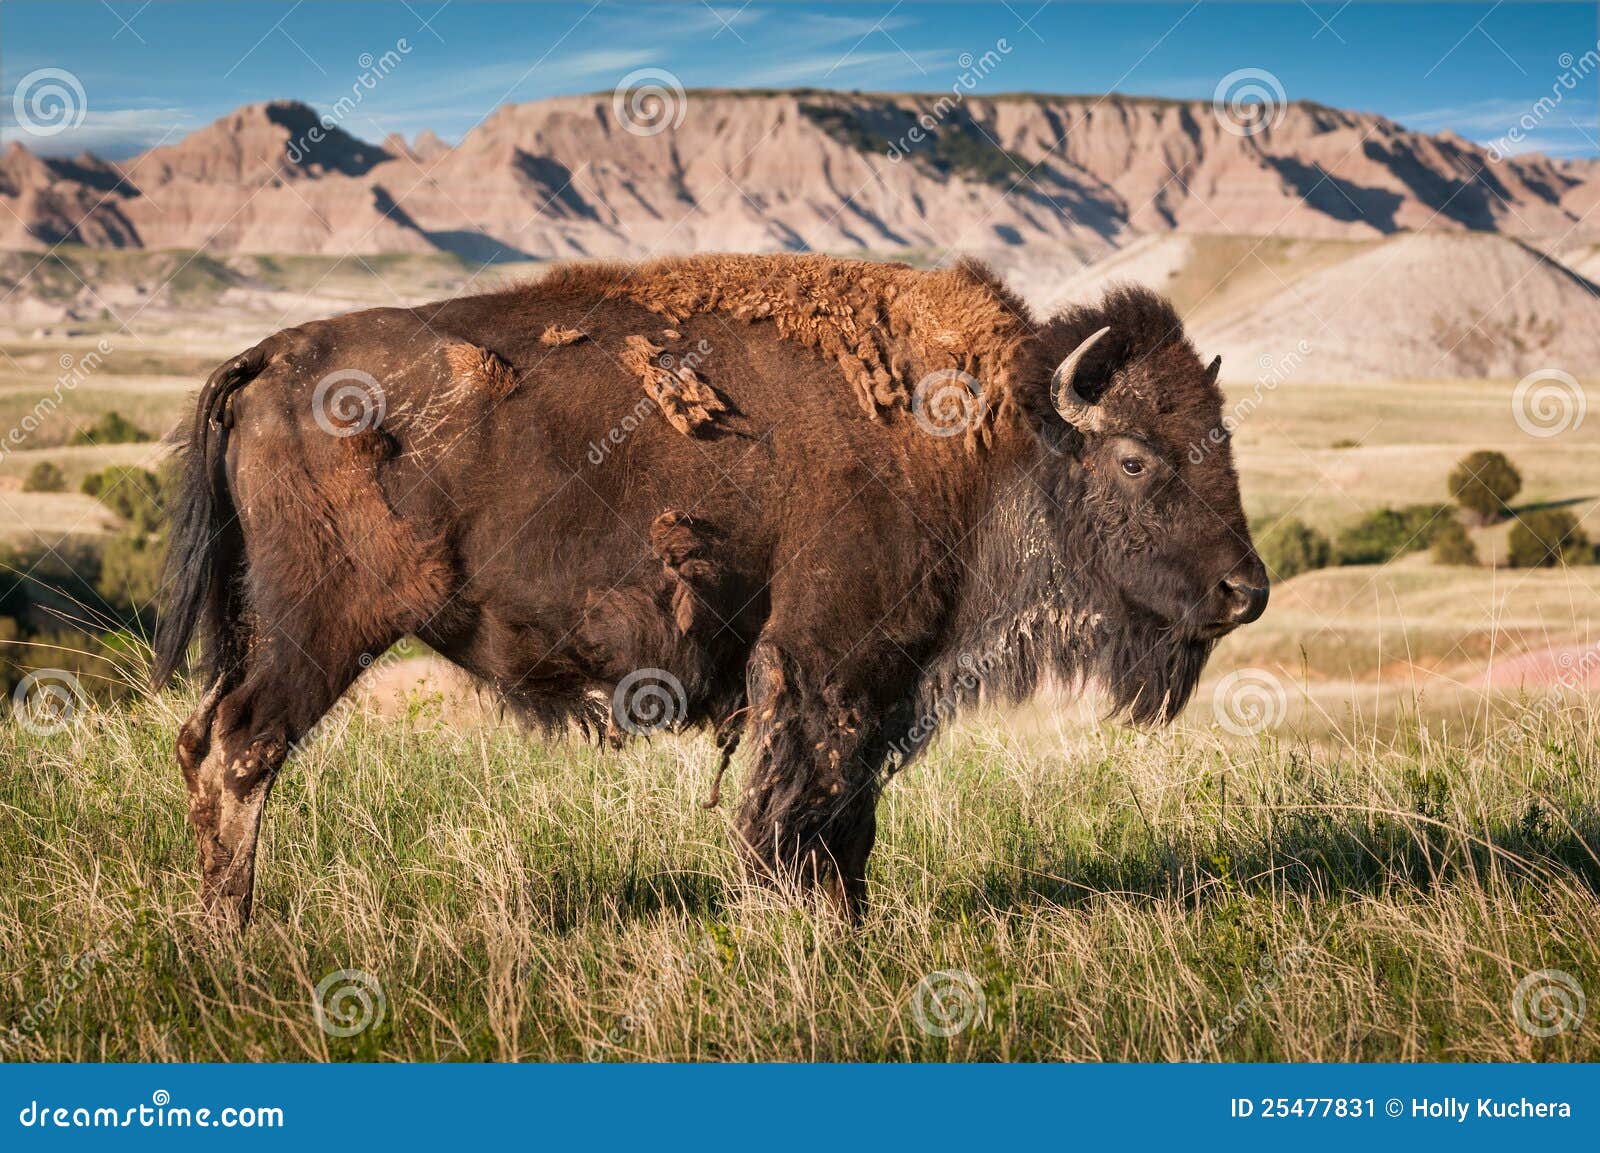 badlands american bison bull (bison bison)